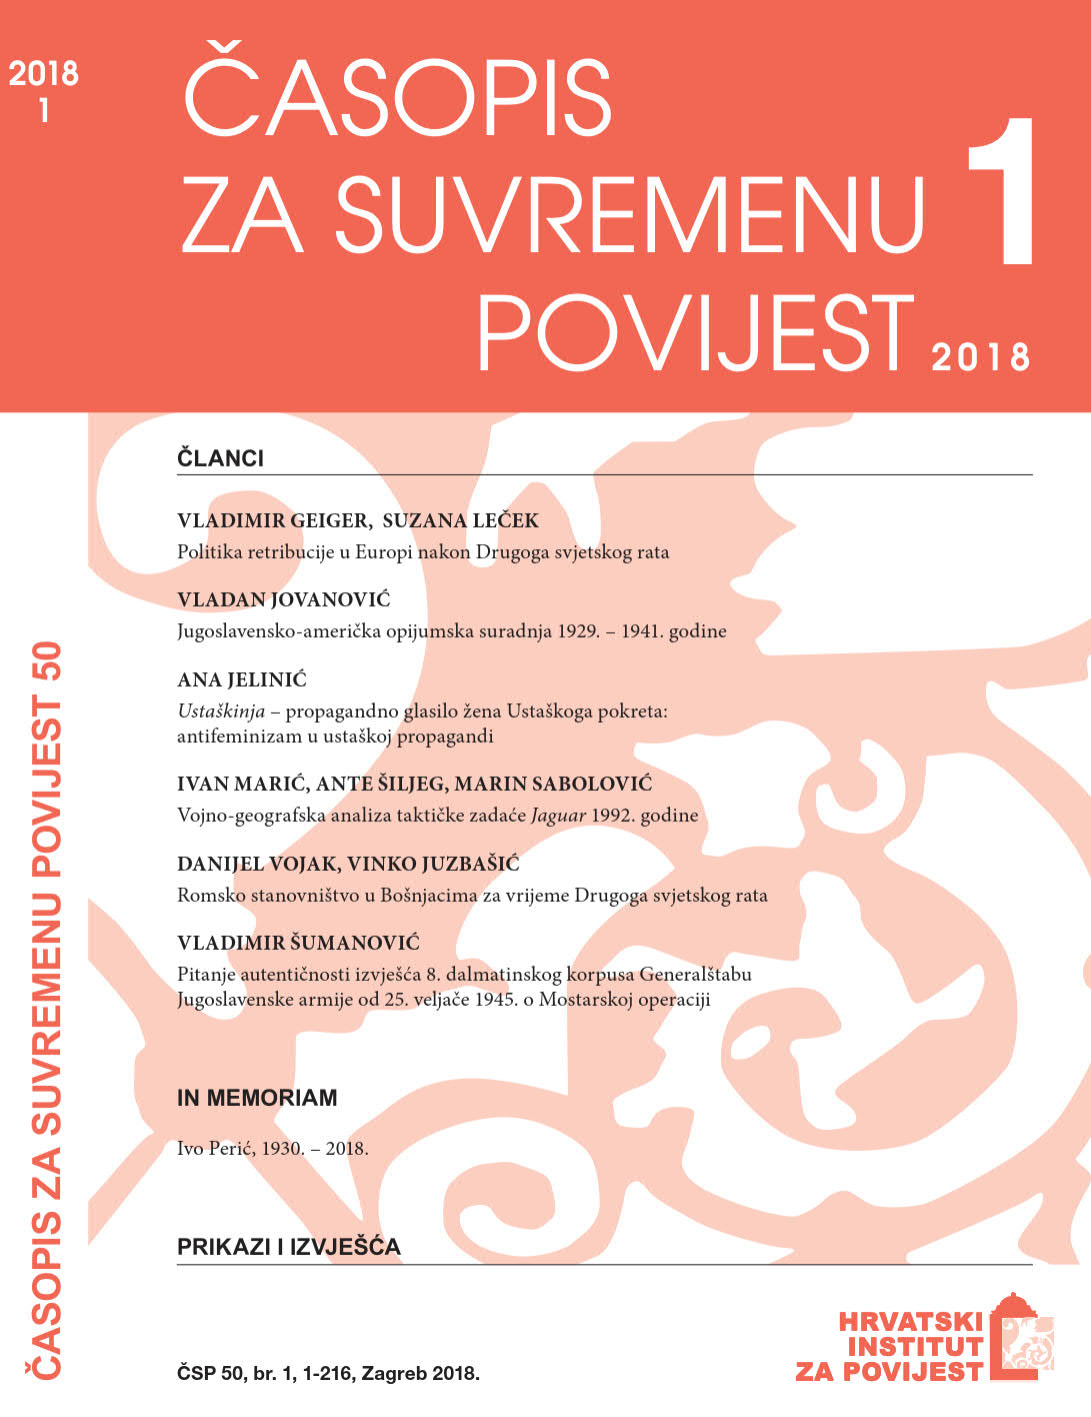 Ustaškinja – The Propaganda Organ of the Women’s Ustasha Movement: Antifeminism in Ustasha Propaganda Cover Image